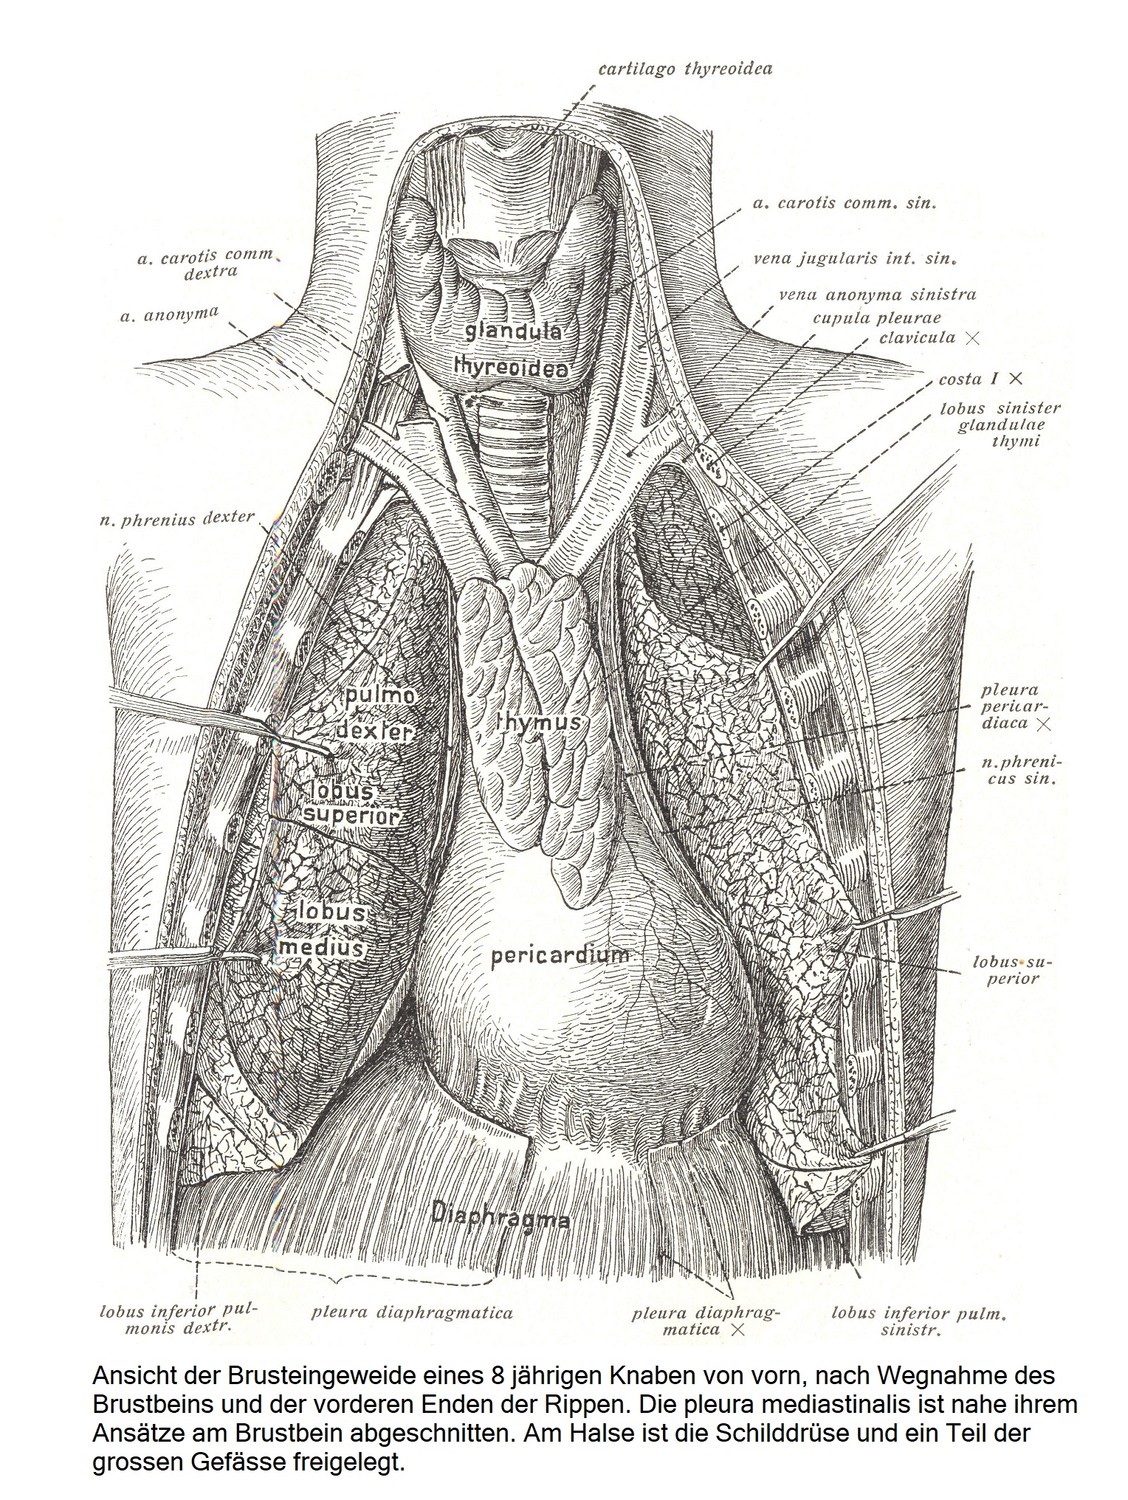 Вид спереди внутренних органов грудной клетки 8-летнего мальчика после удаления грудины и передних концов ребер. Медиастинальная плевра отсекается в месте ее прикрепления к грудине. На шее обнажают щитовидную железу и часть крупных сосудов.